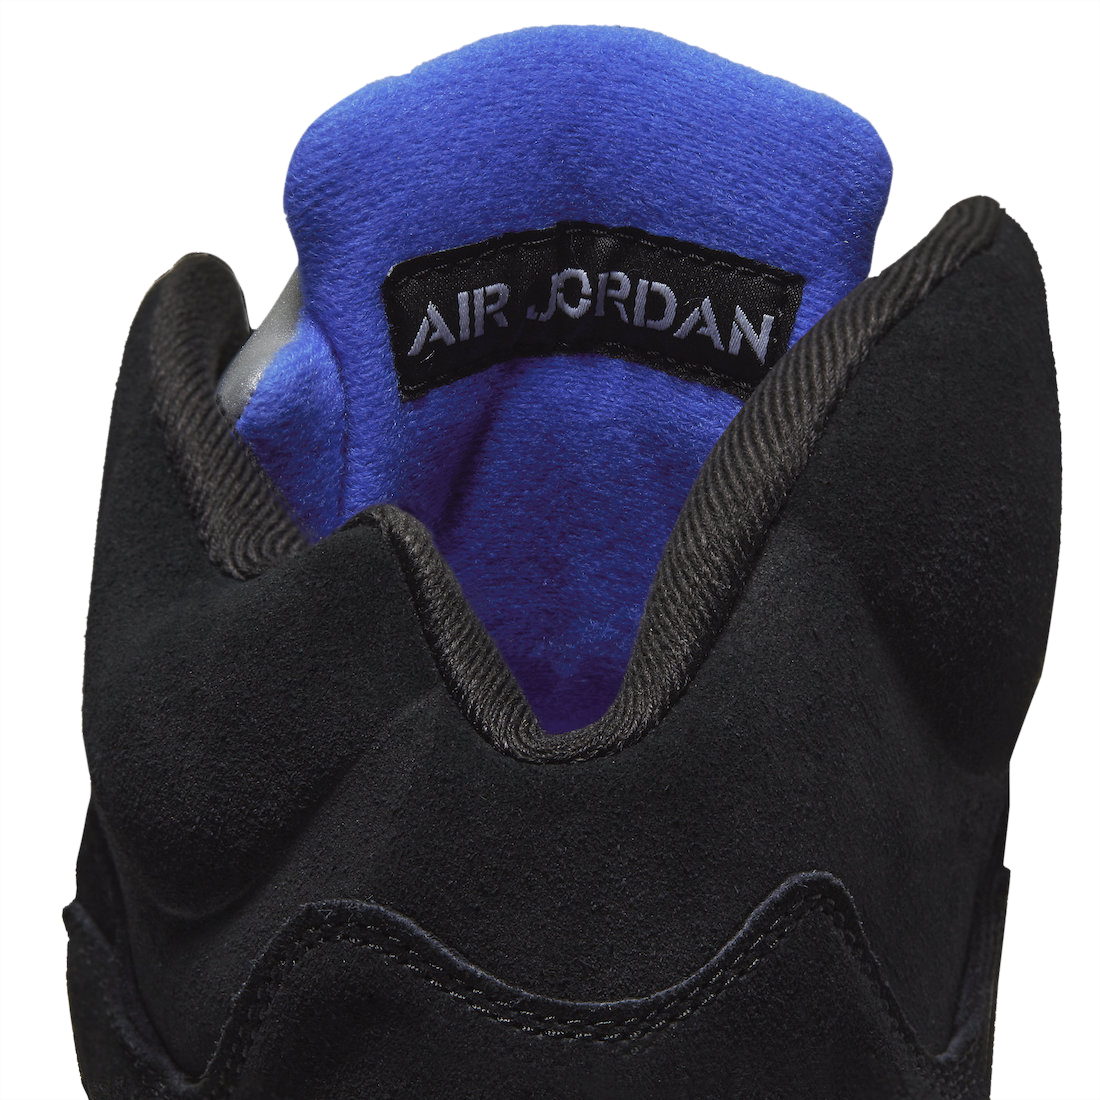 Air Jordan 5 Racer Blue CT4838-004